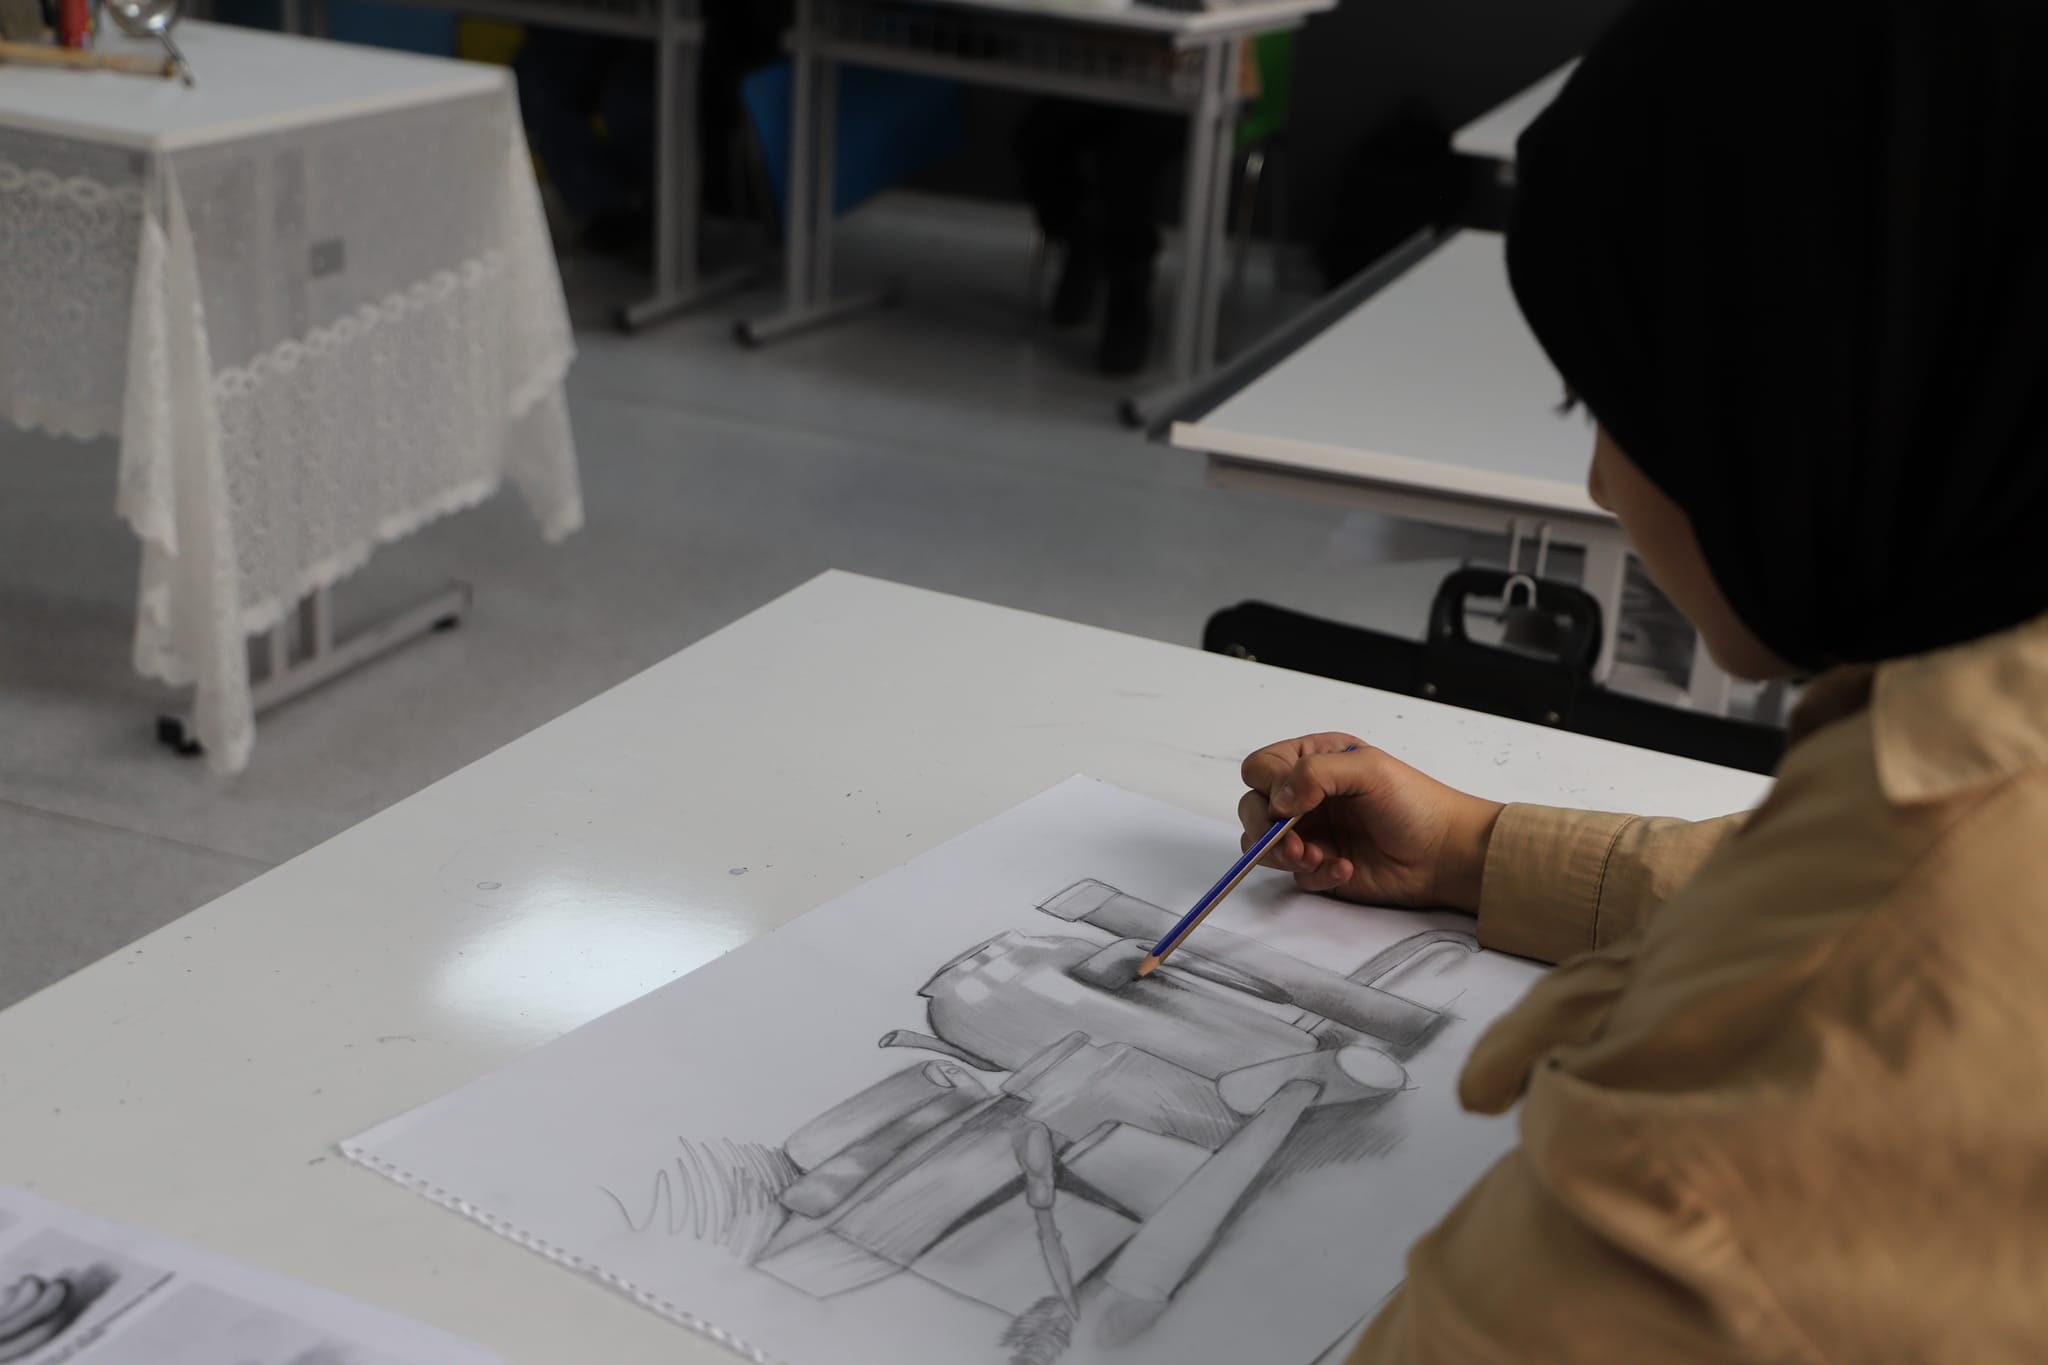 Bayburt'ta minik öğrenciler Tasarım Beceri Merkezinde atölye çalışmasına katıldı